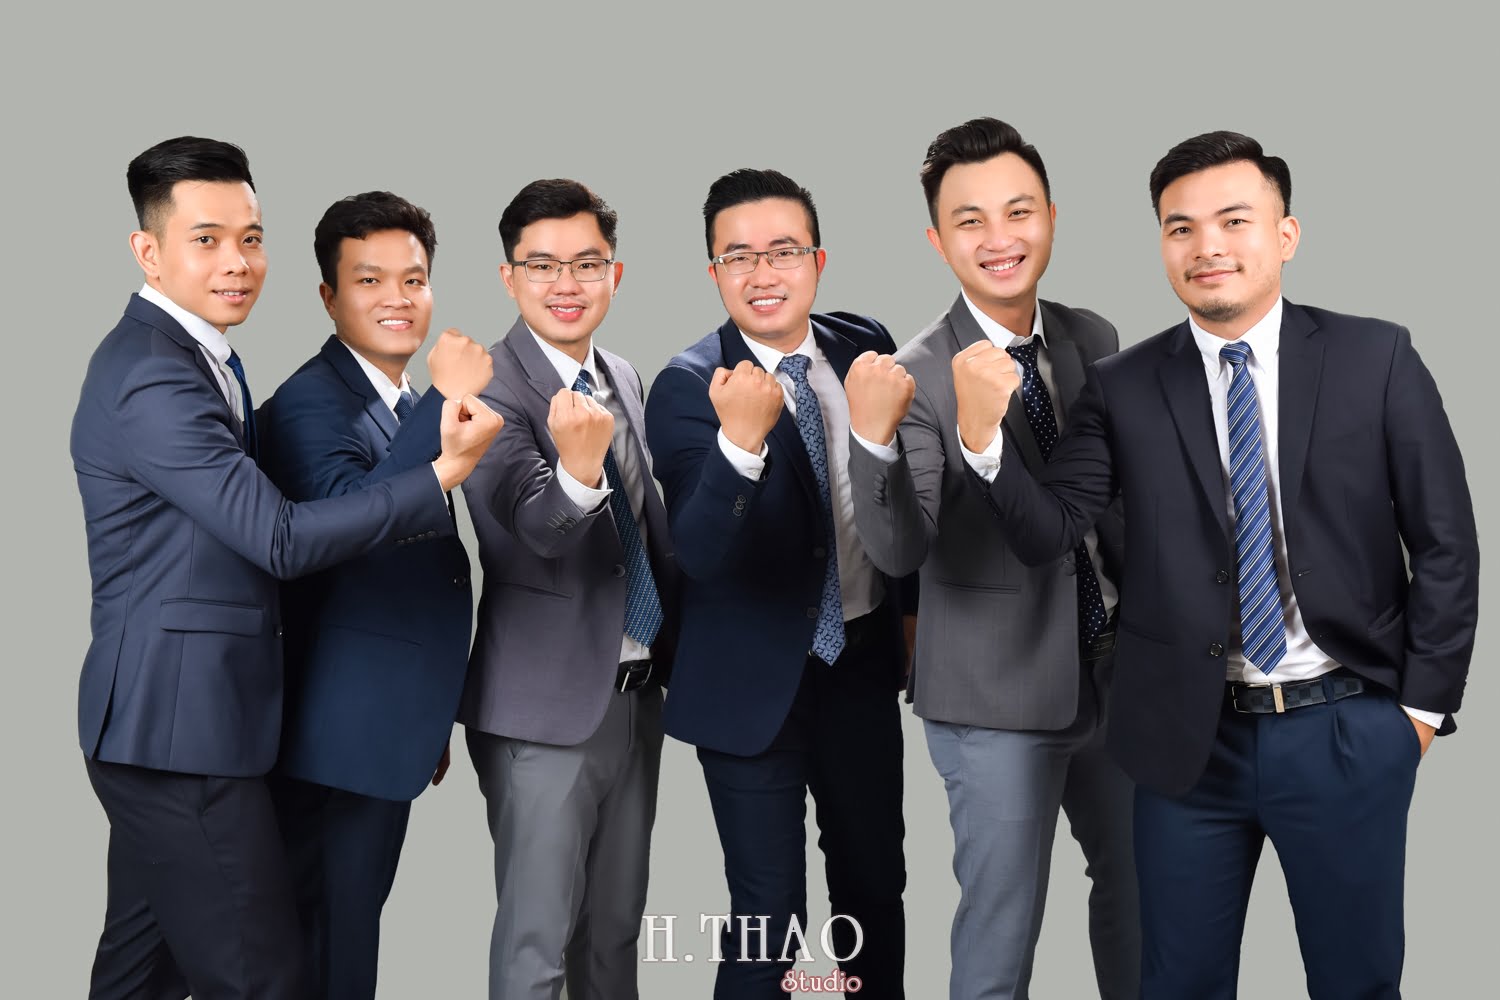 Anh profile cong ty 14 - #3 concept chụp ảnh công ty chuyên nghiệp nhất hiện nay – HThao Studio